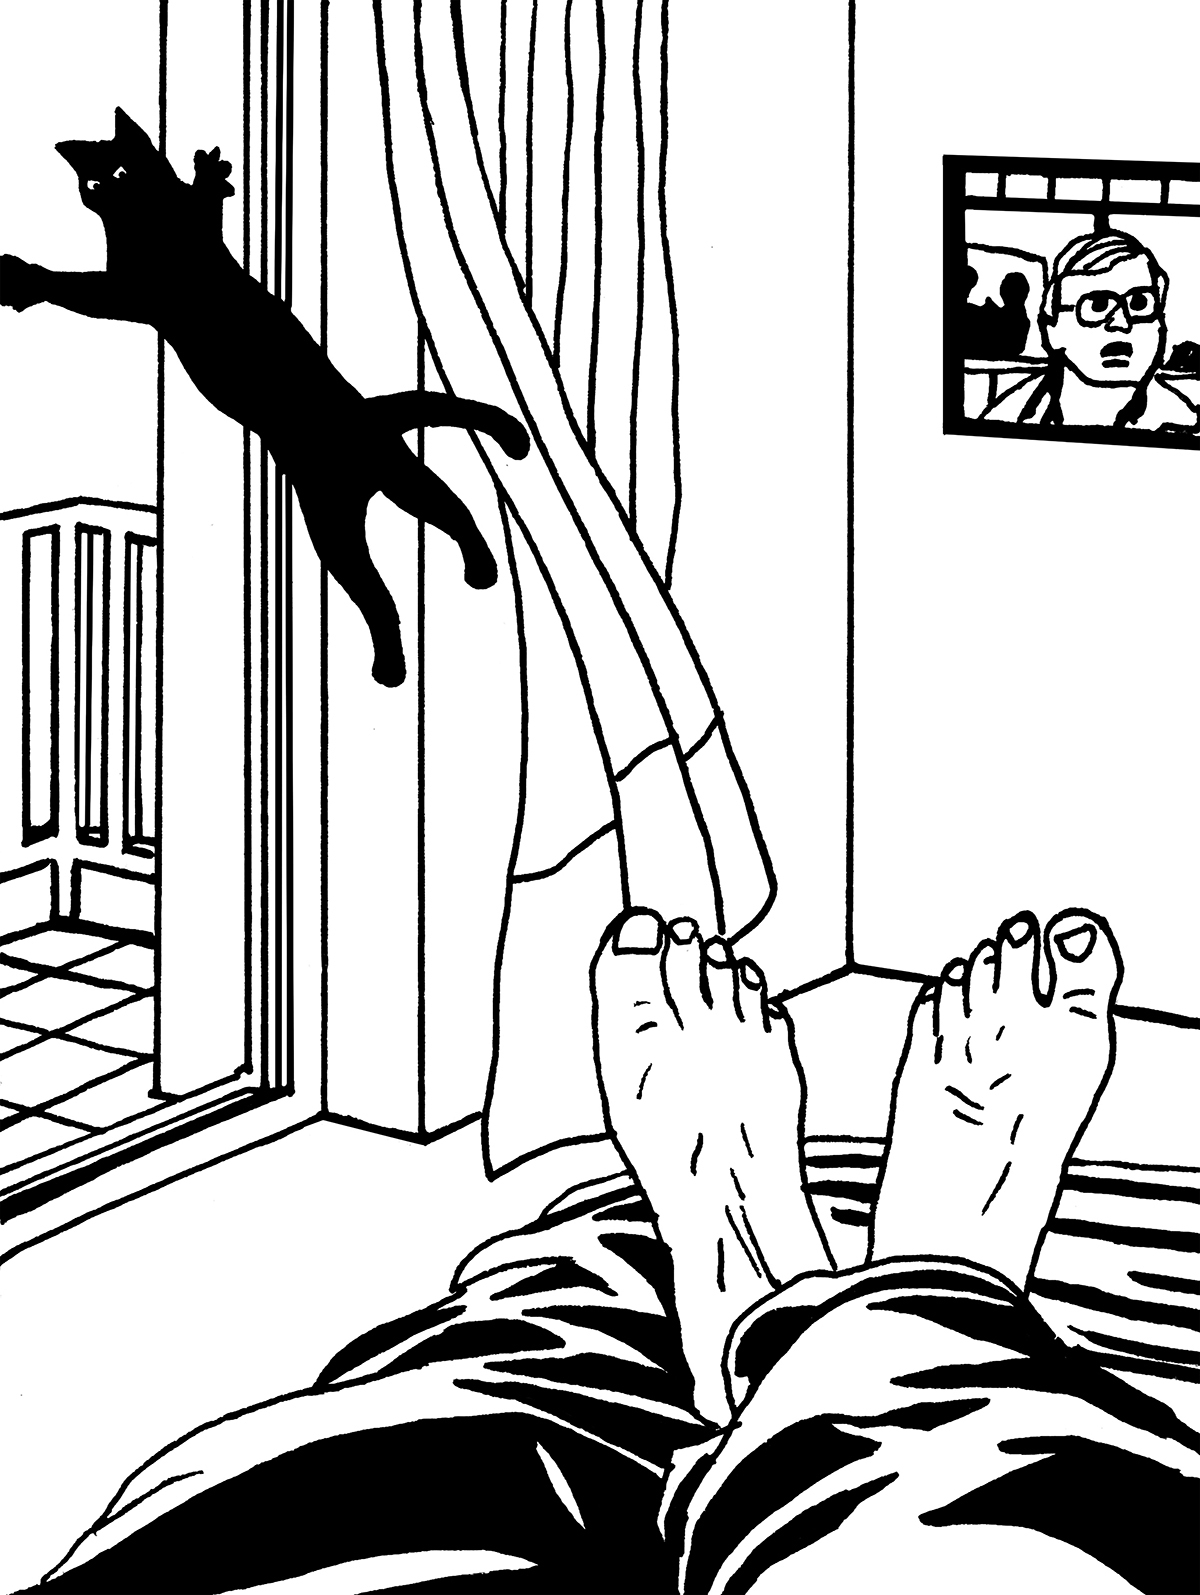 Wnętrze pokoju, na pierwszym planie bose stopy mężczyzny leżącego na łóżku. Na drugim planie czarny kot z rozłożonymi łapami wyskakuje przez balkon.